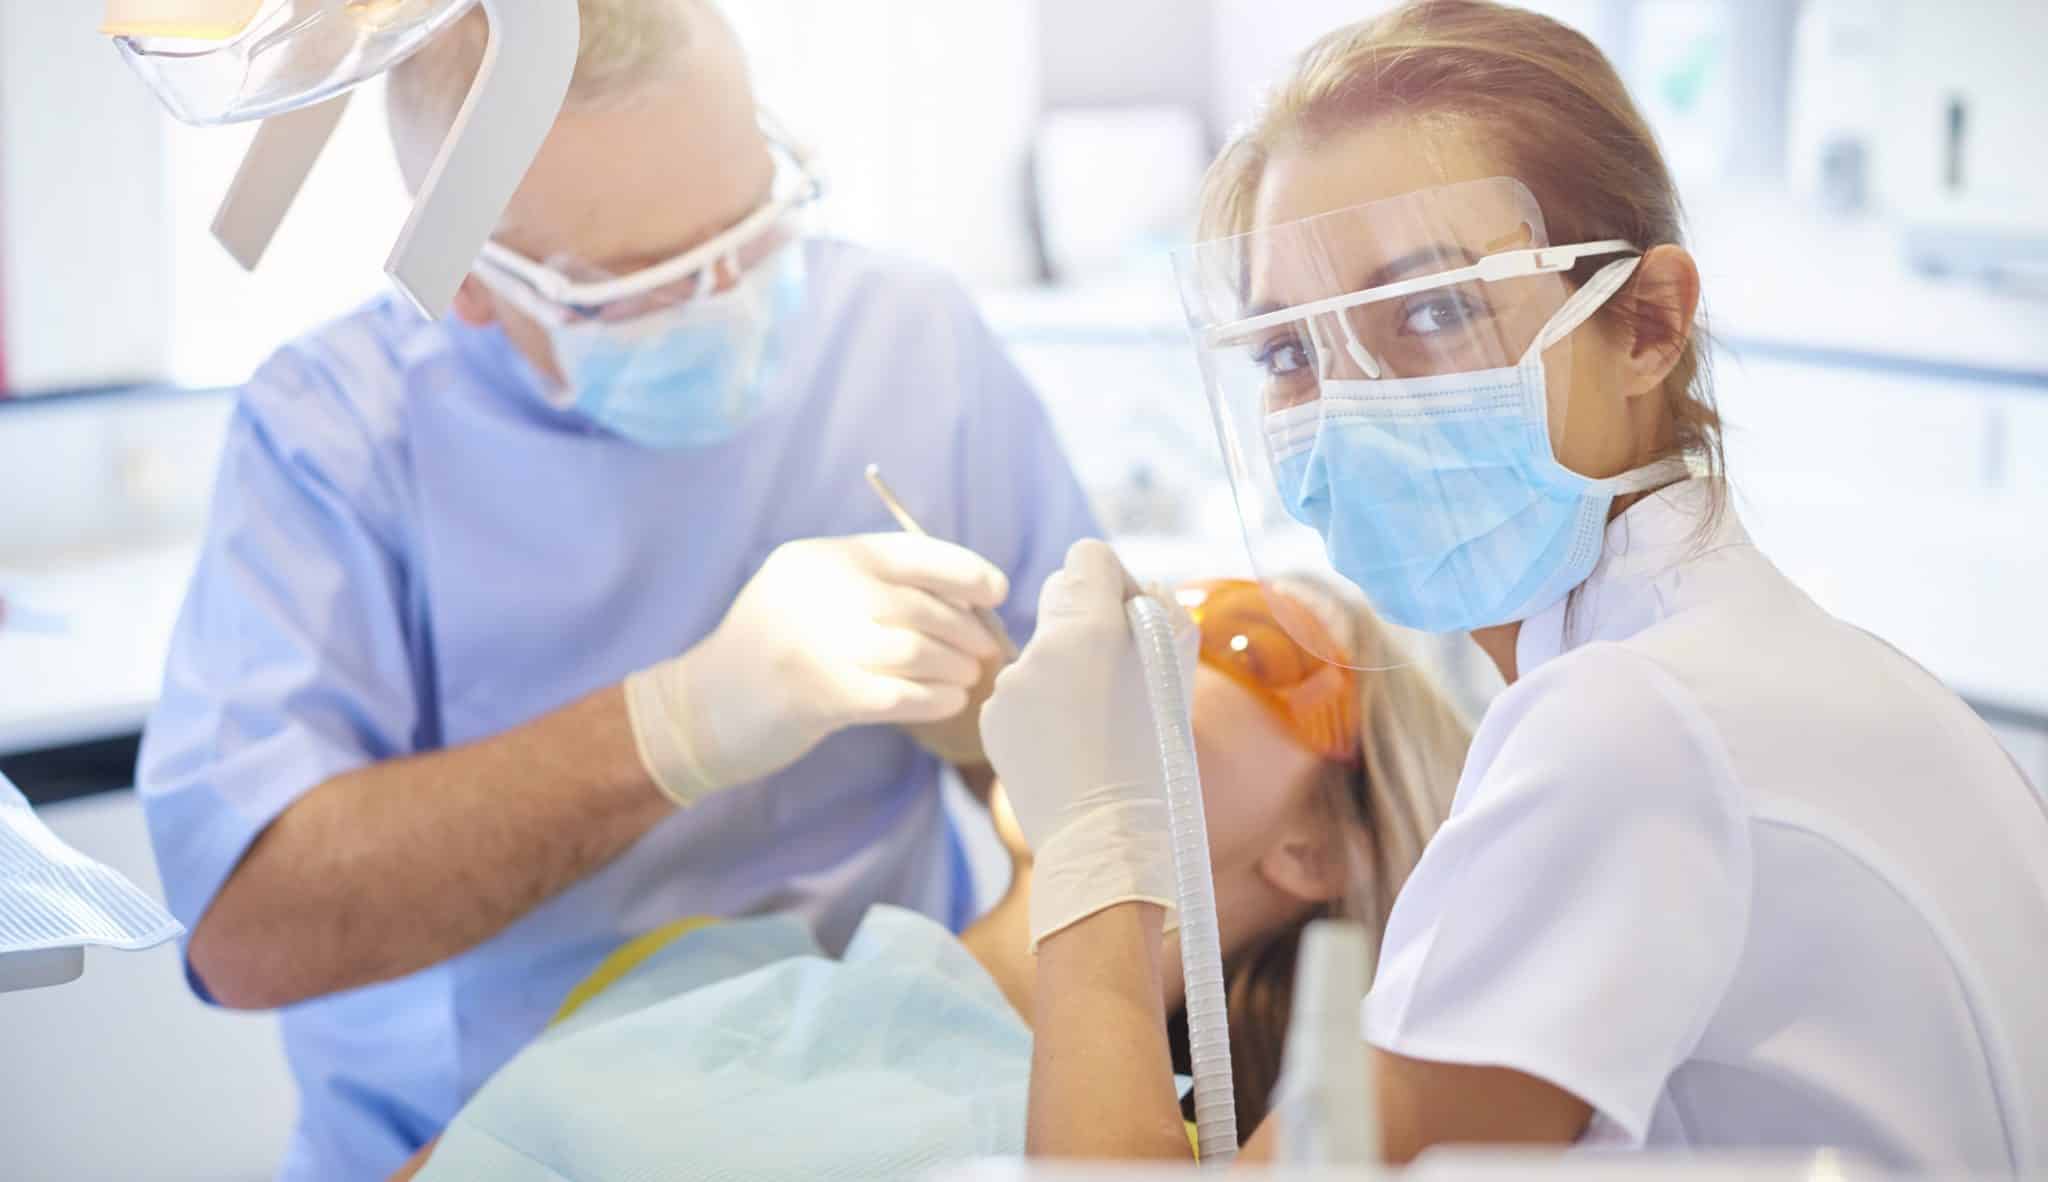 Dental nurse in action